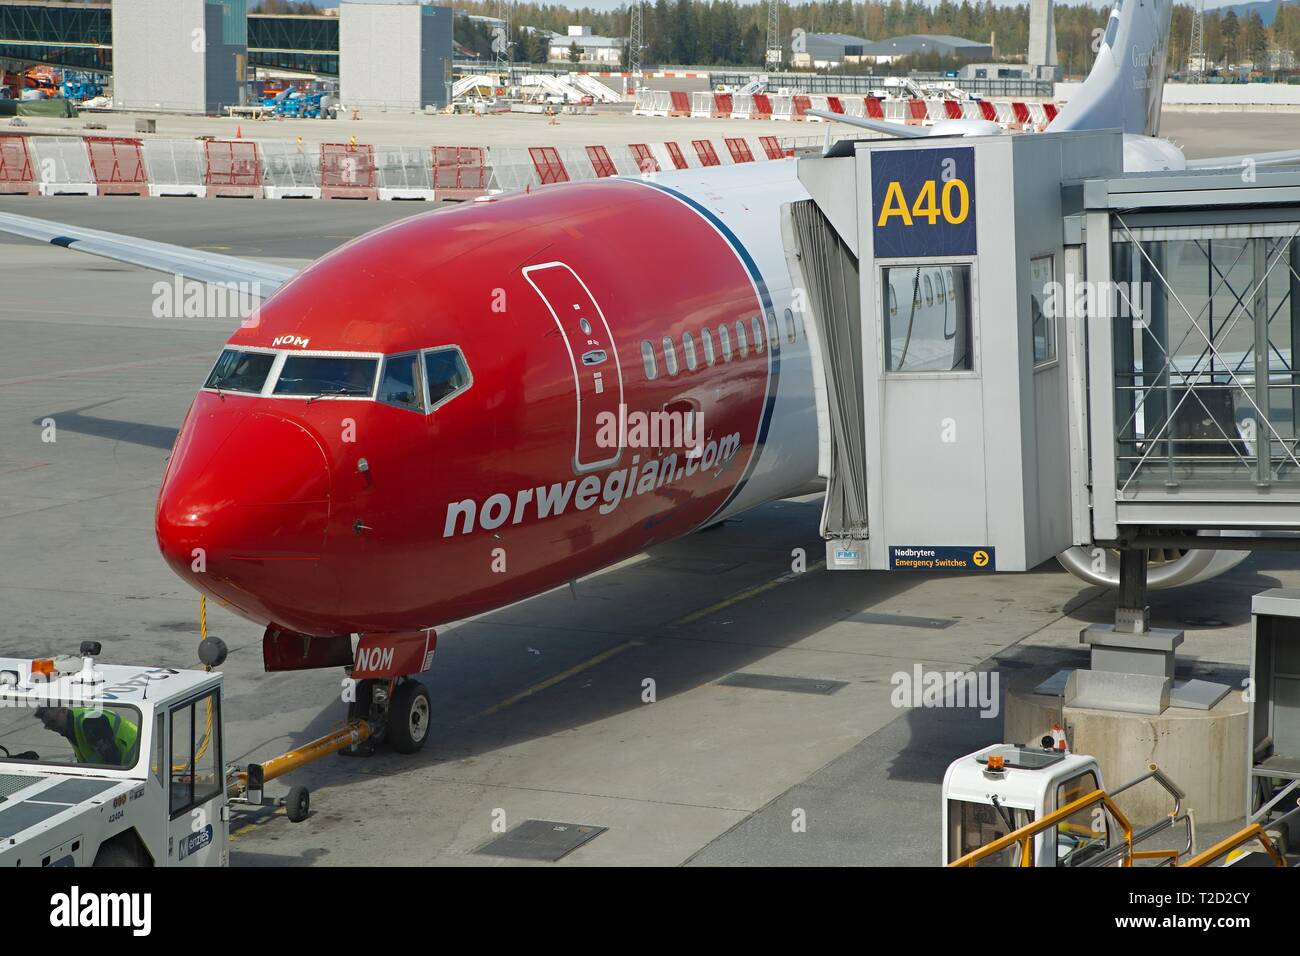 OSLO, Norwegen - 3. Mai 2015: Flugzeug von Norwegian Air Shuttle am Flughafen Oslo Gardermoen, levaing der Jet Bridge. Durch towtruck geschoben, bereit für d Stockfoto